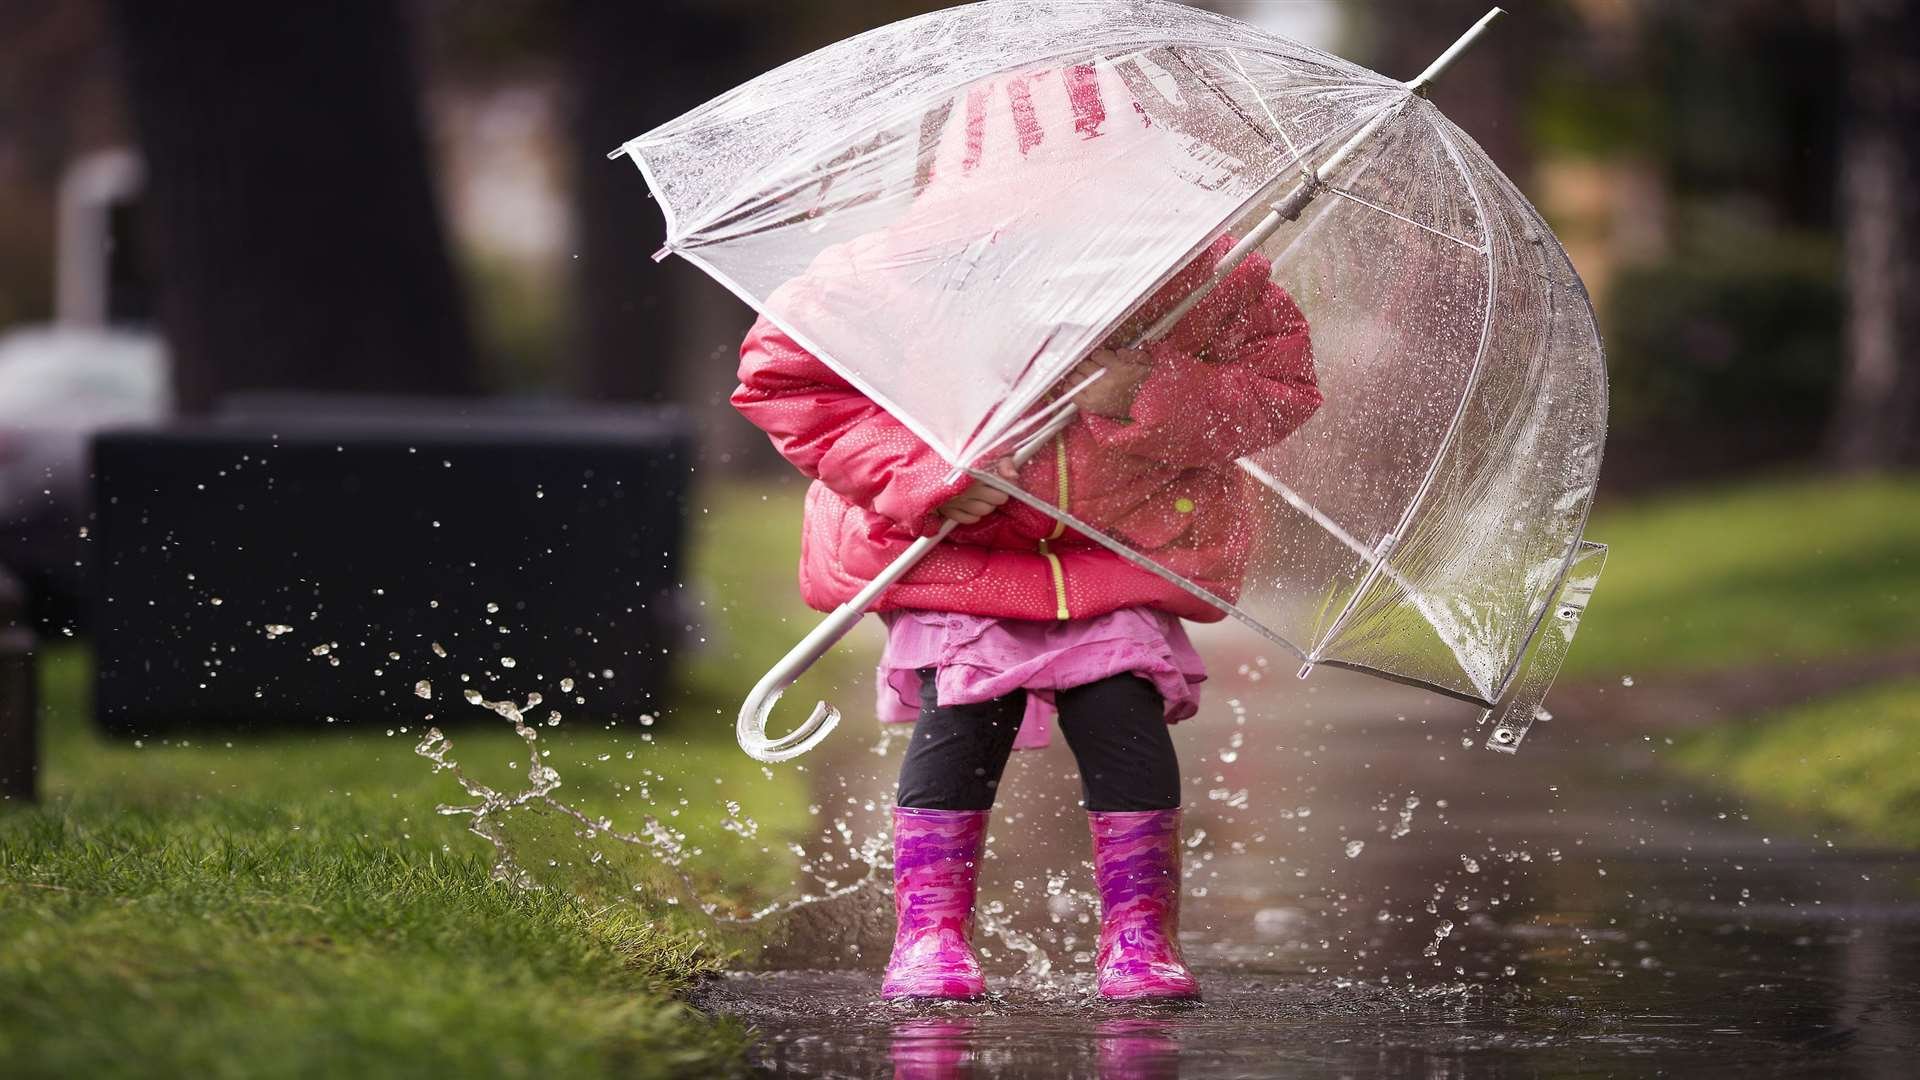 Дождь по лужам. Зонтик для детей. Зонт под дождем. Дети под зонтом. Девочка с зонтиком.